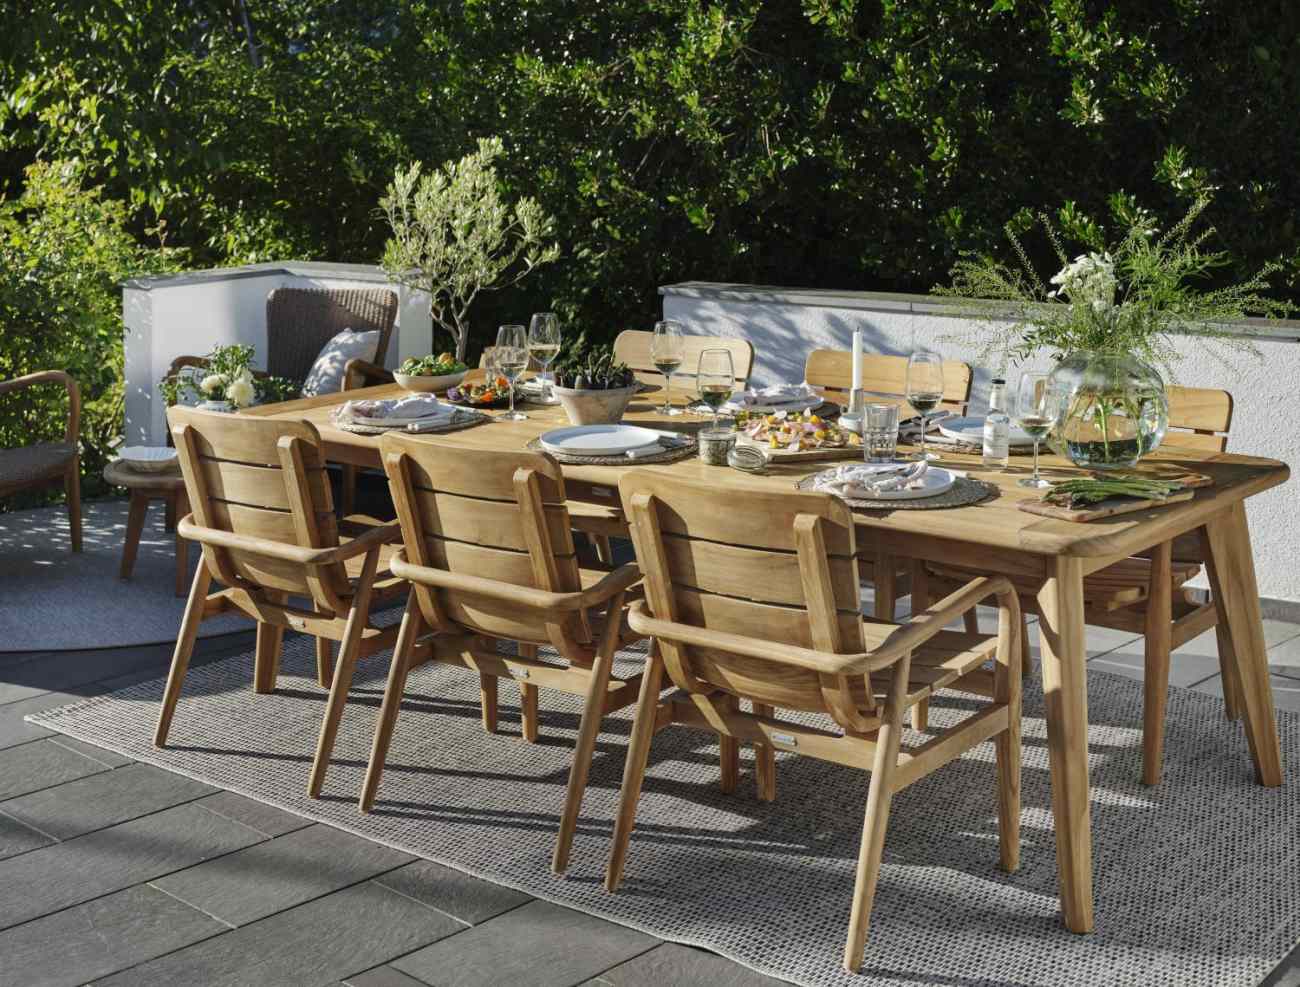 Der Gartenesstisch Lilja überzeugt mit seinem modernen Design. Gefertigt wurde die Tischplatte aus Teakholz und hat eine natürliche Farbe. Das Gestell ist auch aus Teakholz und hat eine natürliche Farbe. Der Tisch besitzt eine Länge von 240 cm.